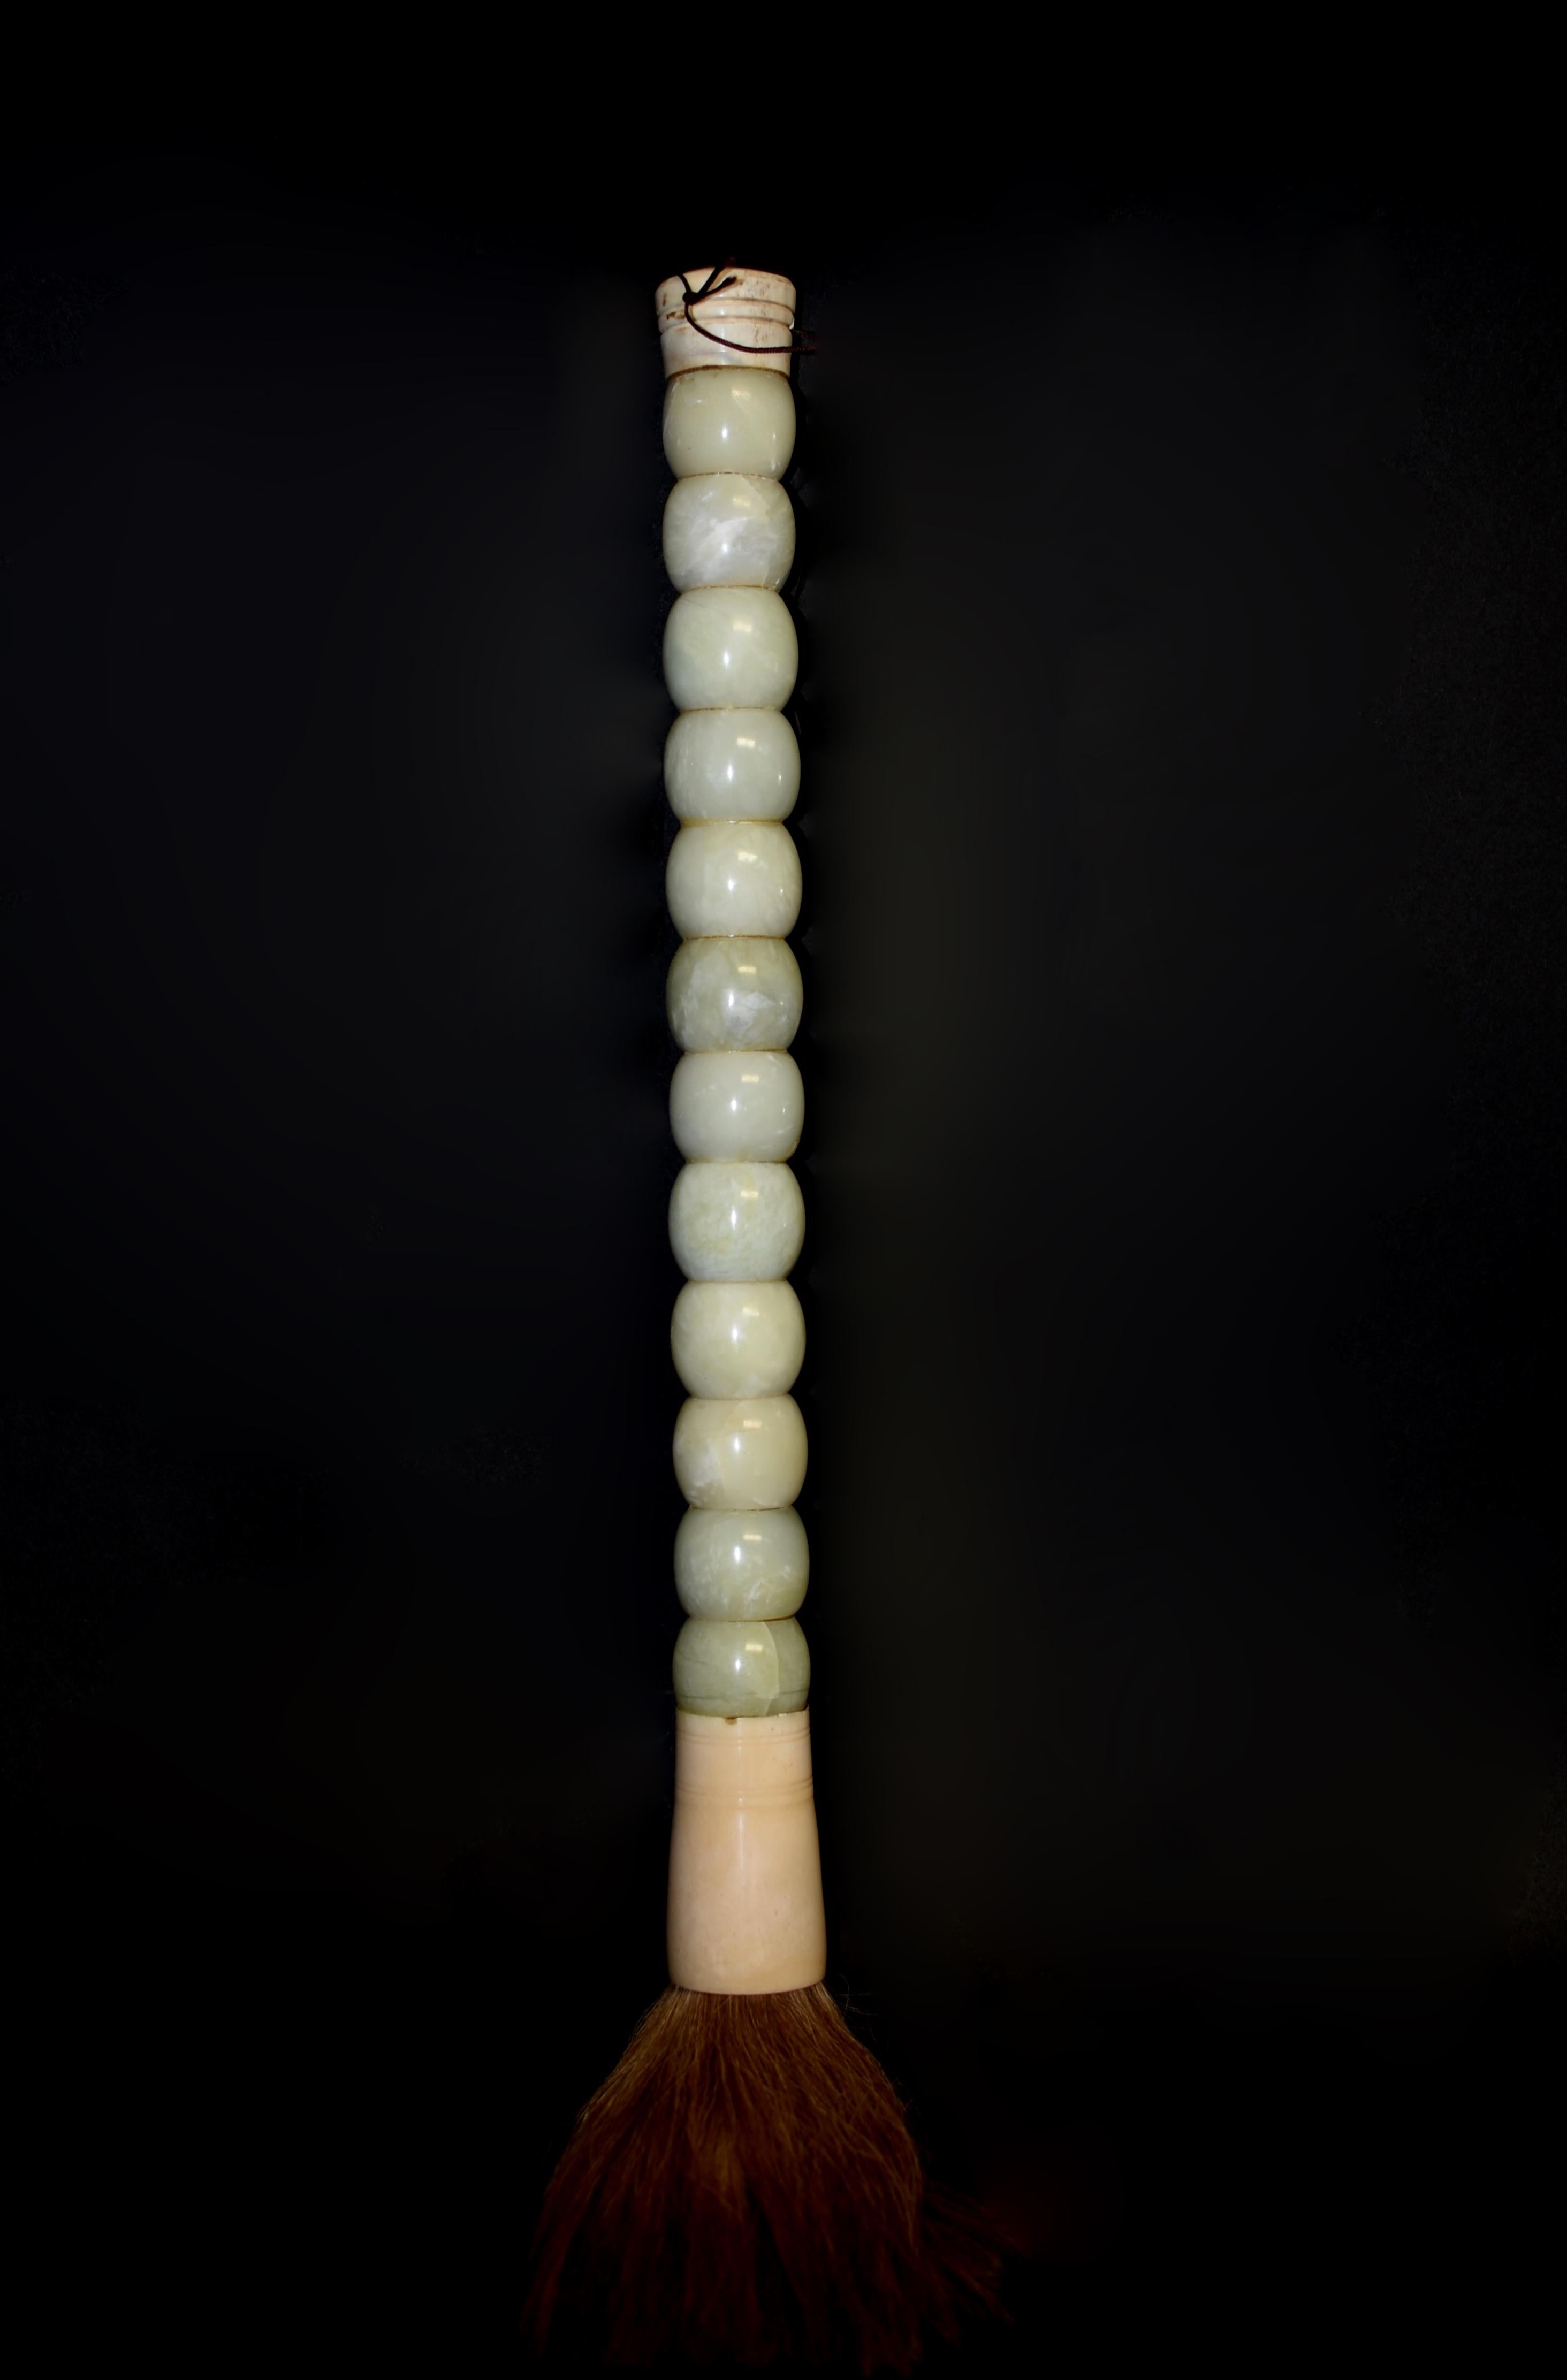 Il s'agit d'un pinceau très large et substantiel avec 12 perles de pierre précieuse en jade. Perles en forme de tonneau, faites à la main avec des pierres précieuses en jade céladon poli. Virole en os et crin de cheval. Cette brosse exceptionnelle